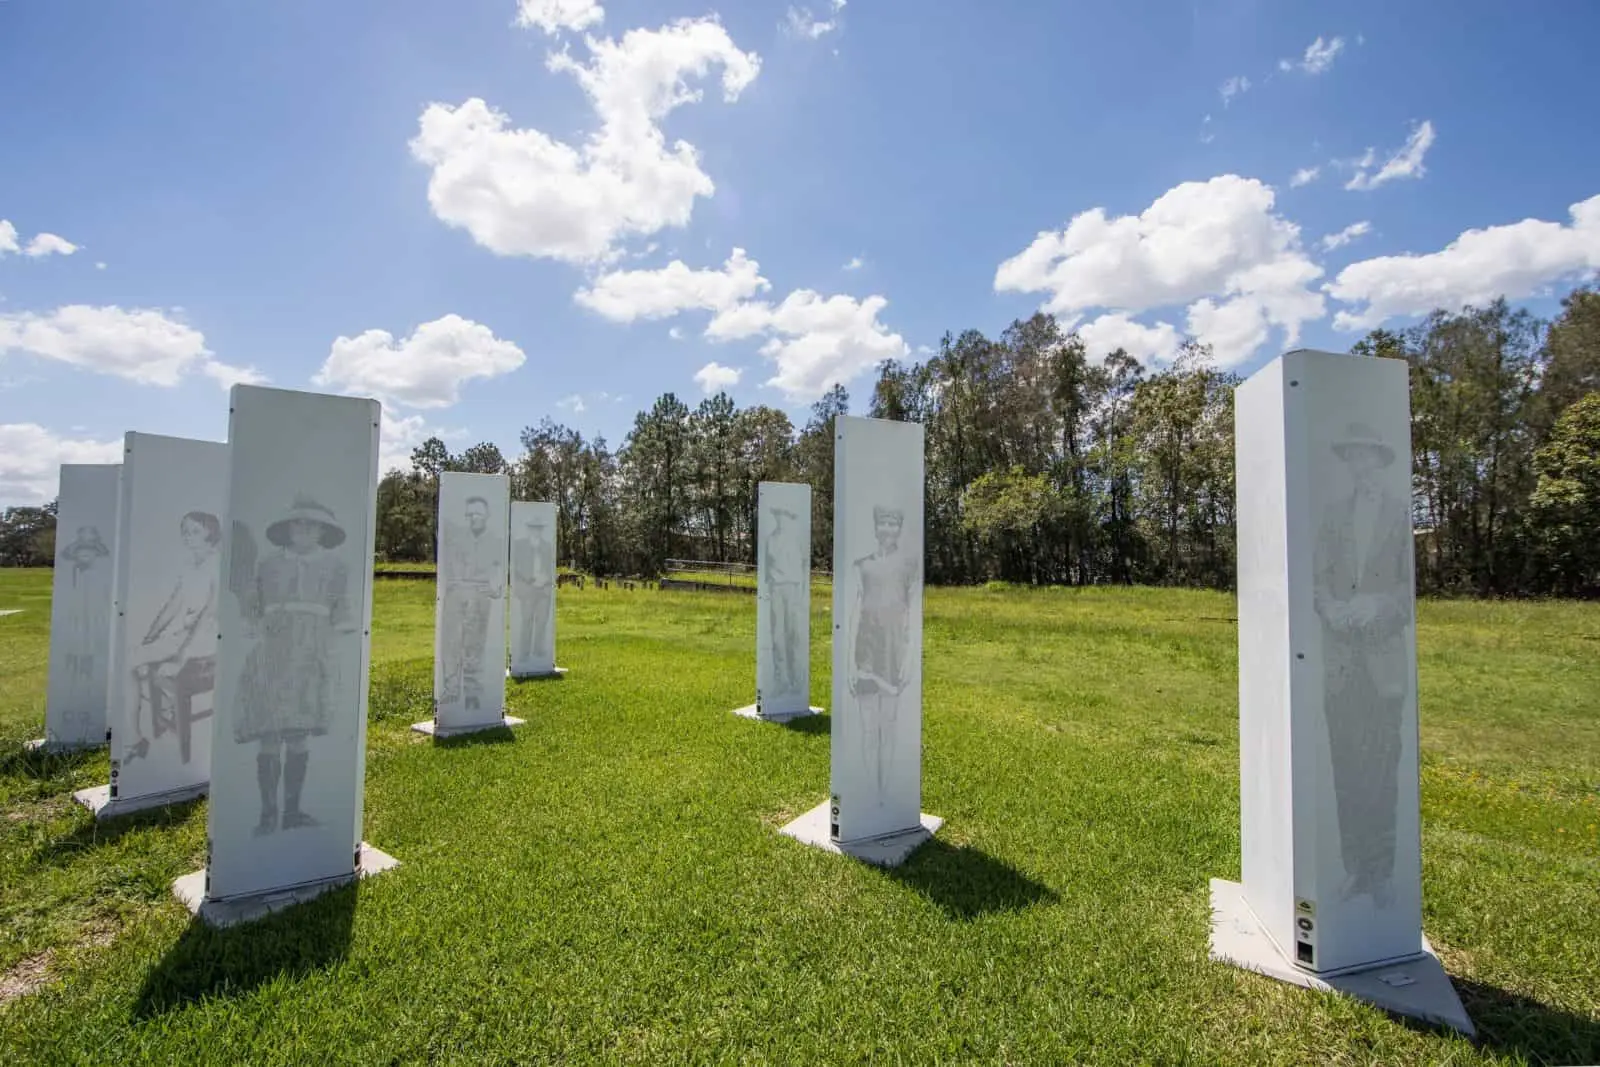 Memorial stones in green field